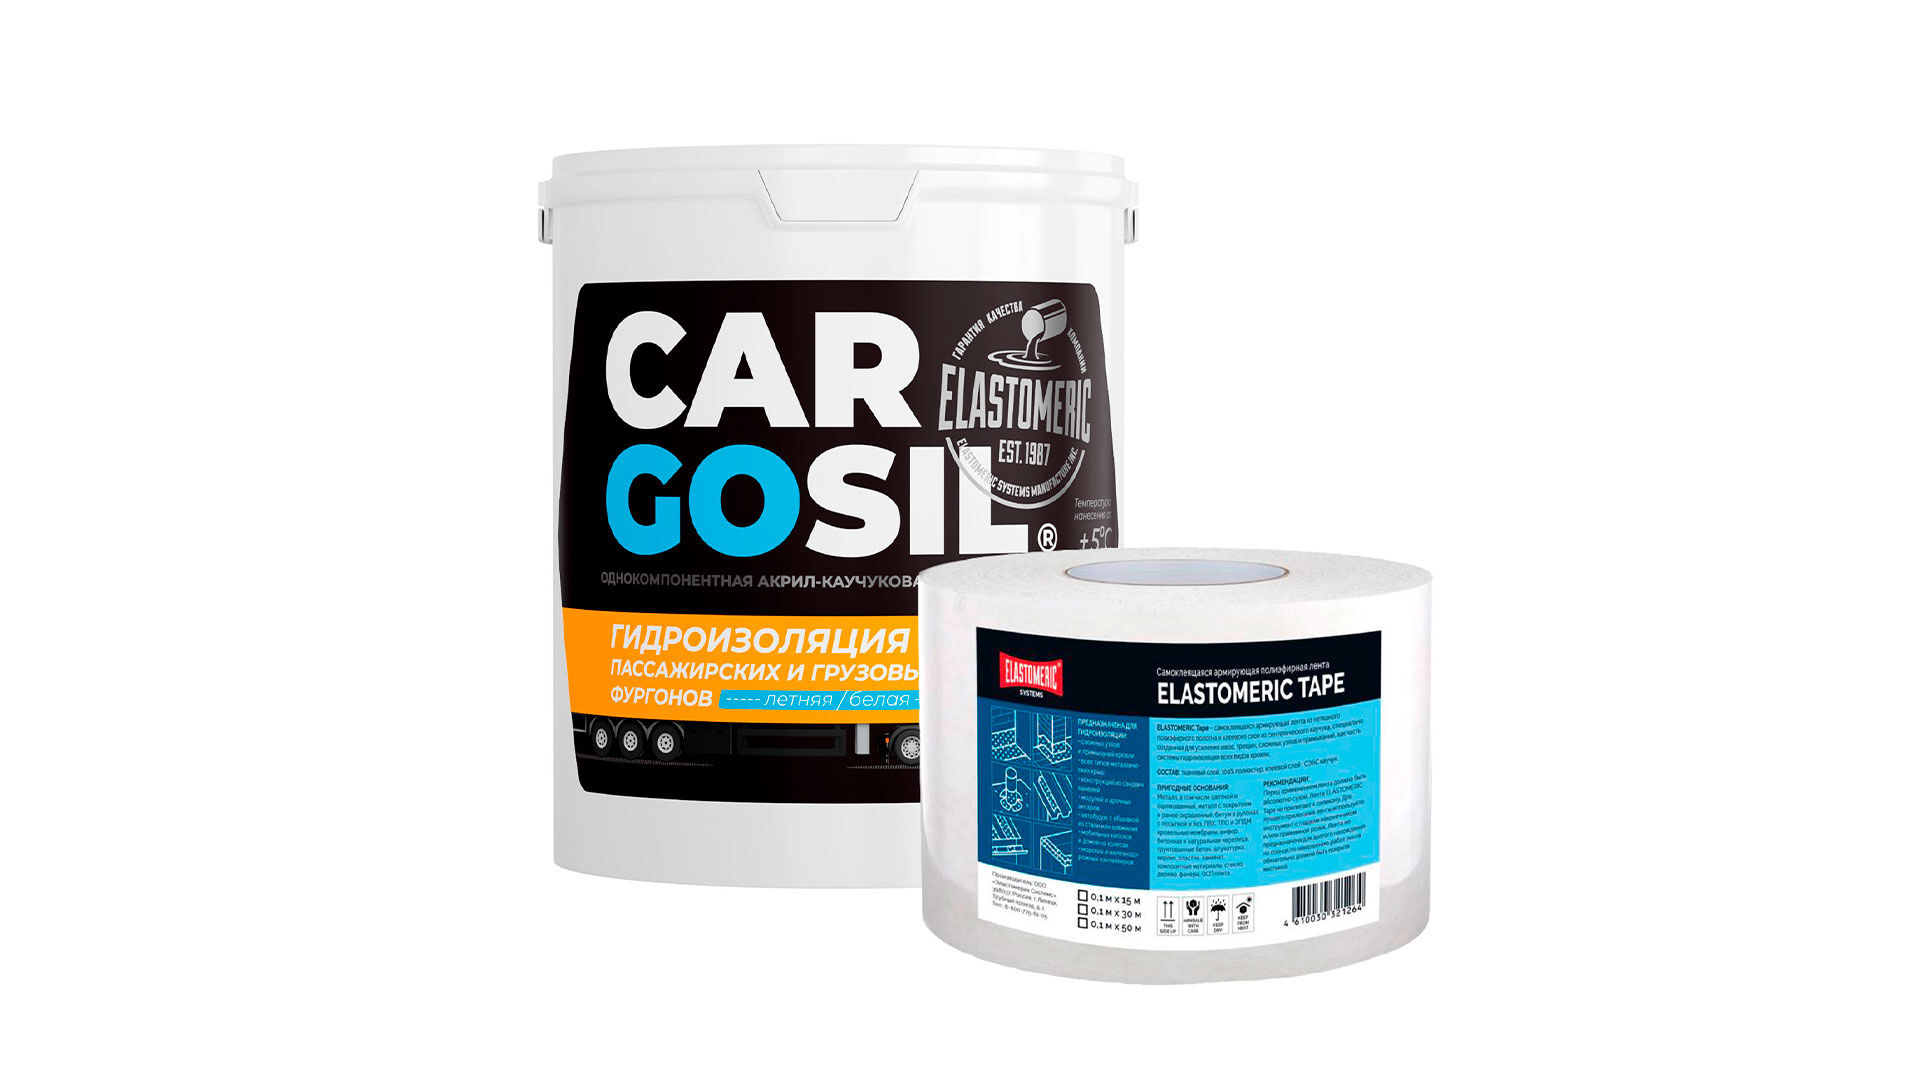 Ремкомплект Cargosil летний - жидкая резина для устранения протечек на крышах фургонов и будок (Белый)